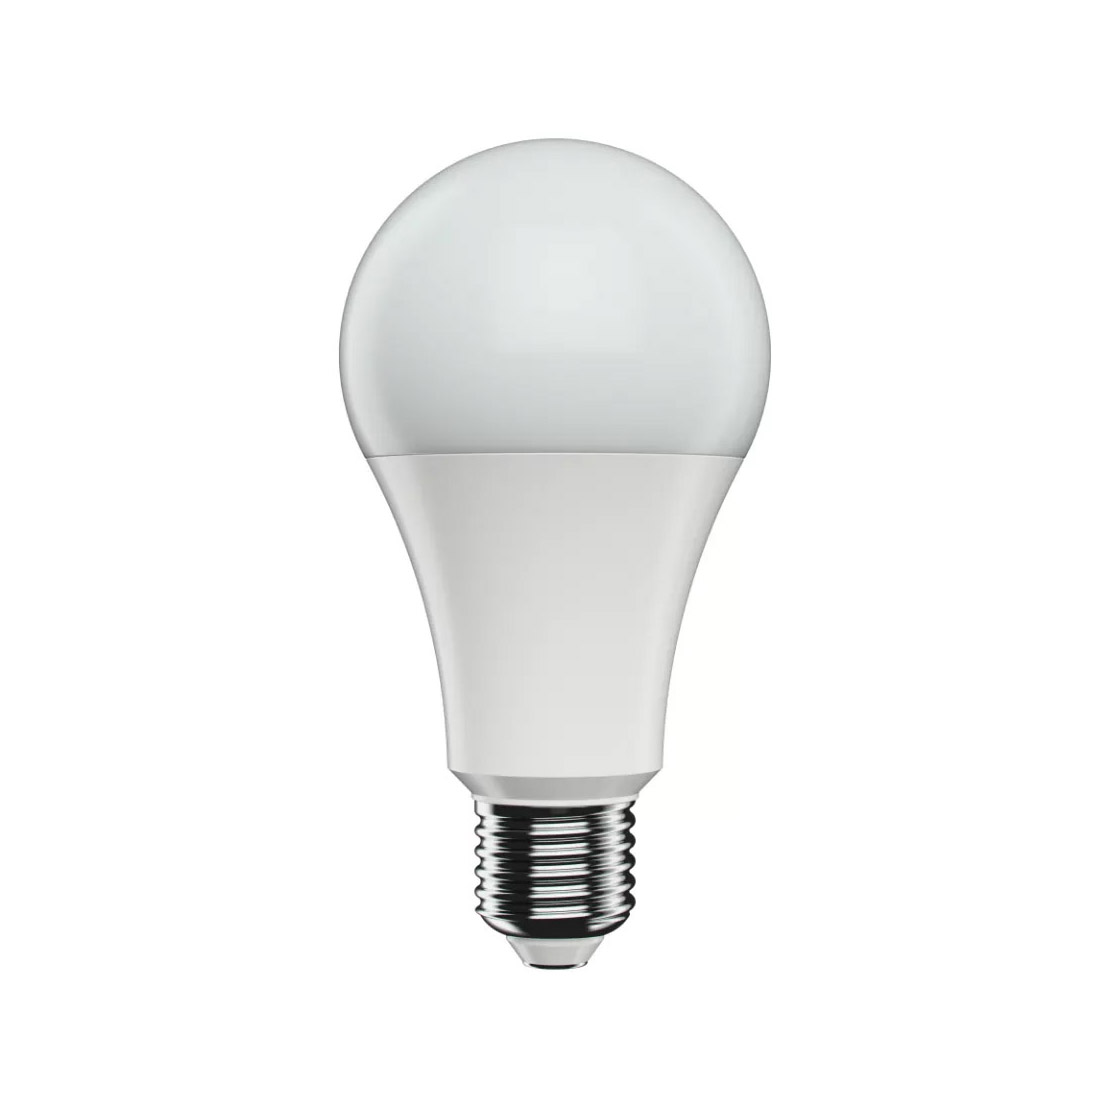 Светодиодная лампочка Umage Idea 1400 Lumen, E27, 13W, 4000K